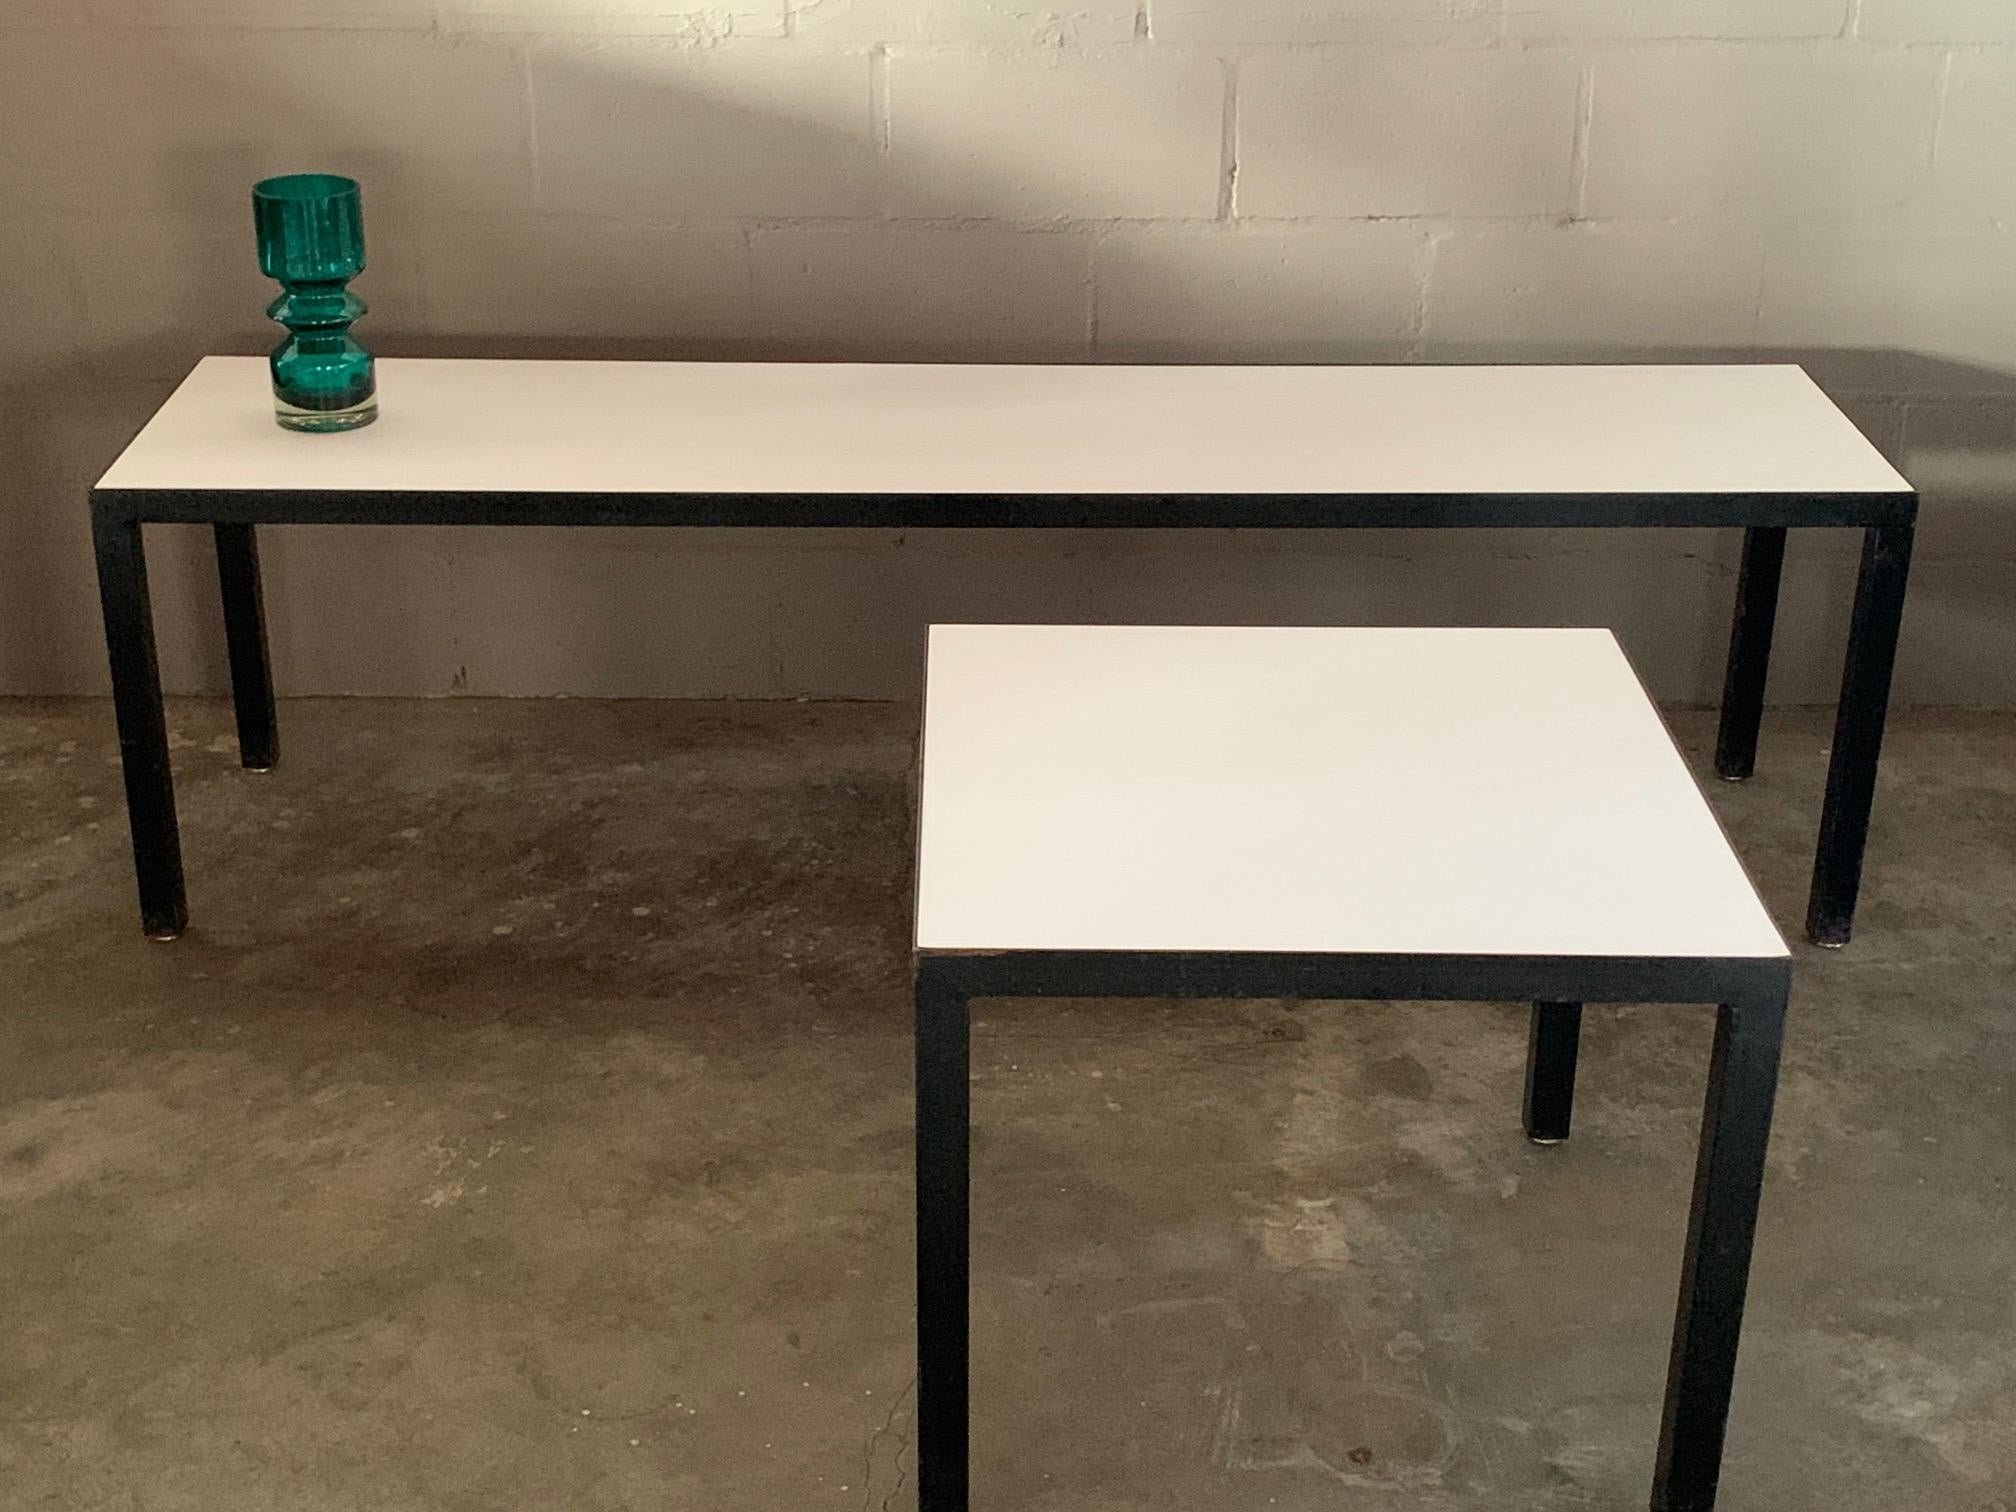 Un banc ou une table basse classique et minimaliste et une table d'appoint assortie par JG Furniture, NYC. L'acier noir et les plateaux en Formica blanc lui confèrent un aspect simple et intemporel. La table longue mesure 18